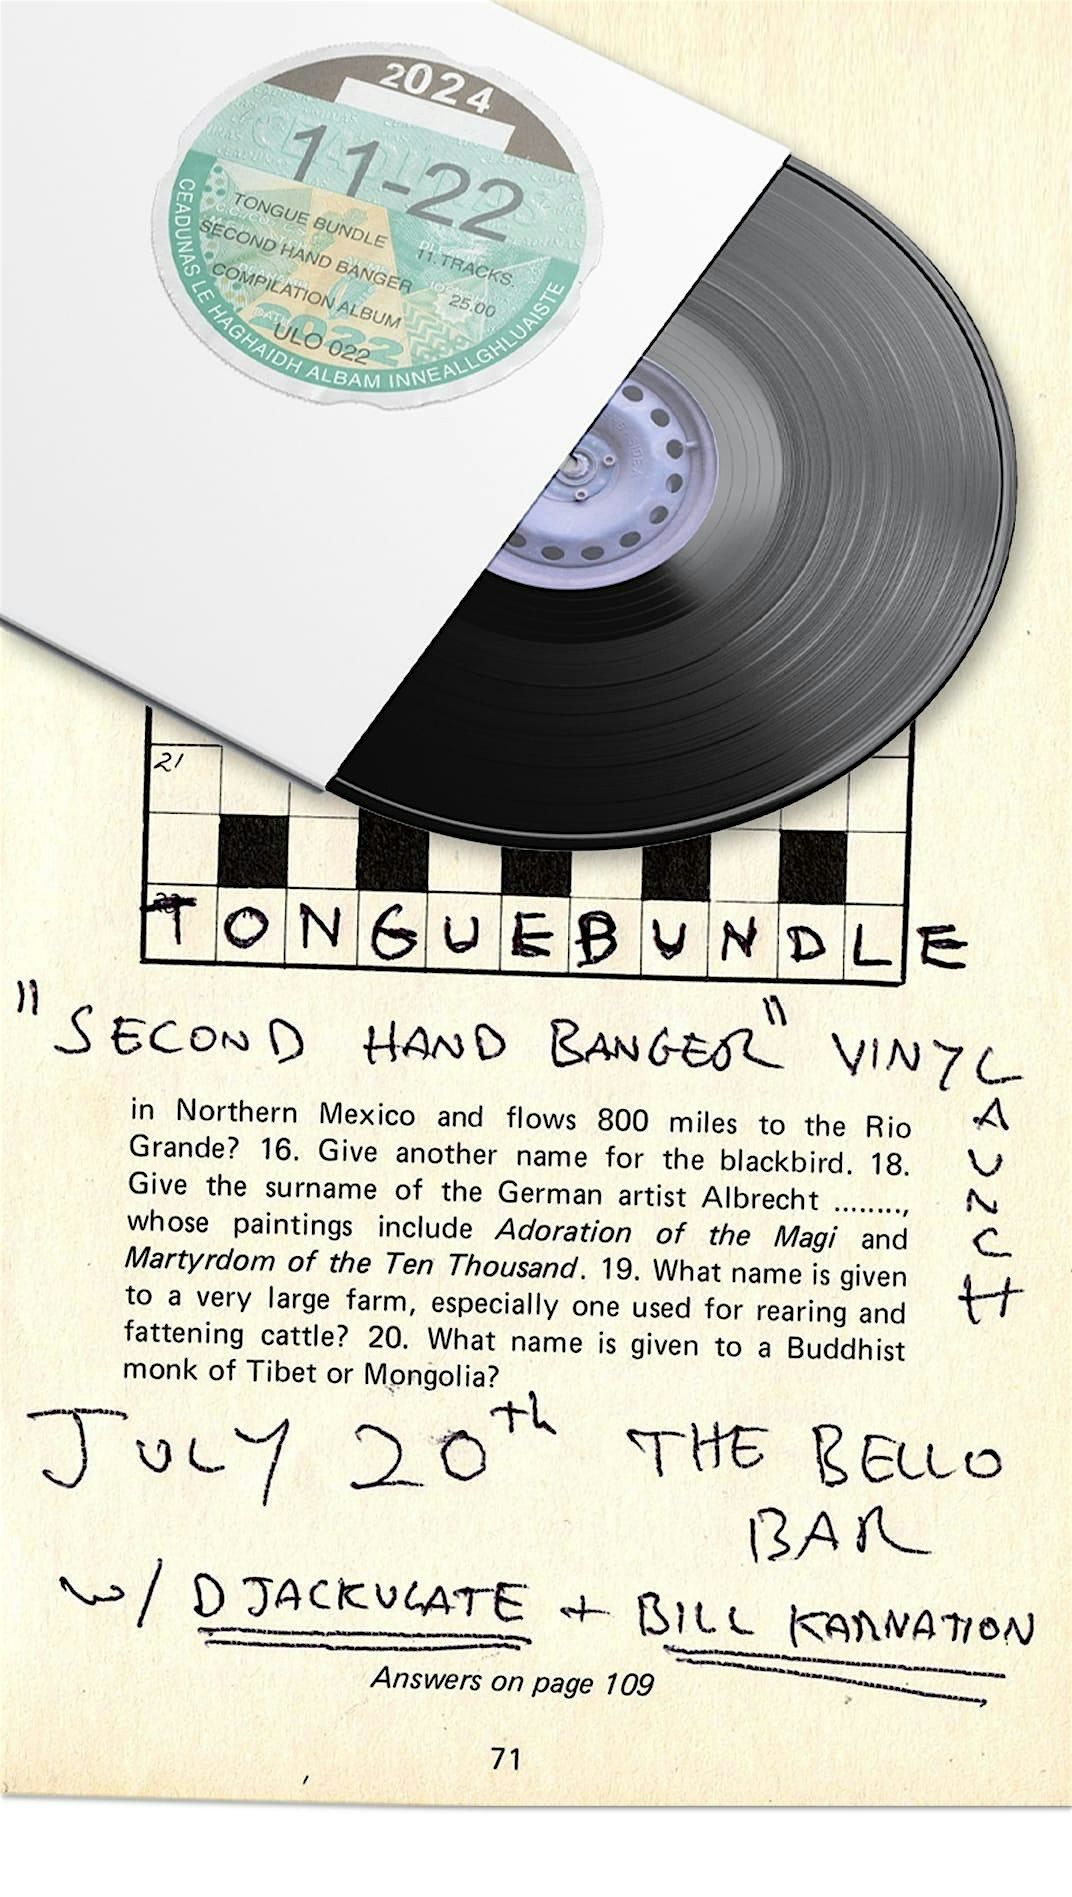 Tongue Bundle Vinyl Launch